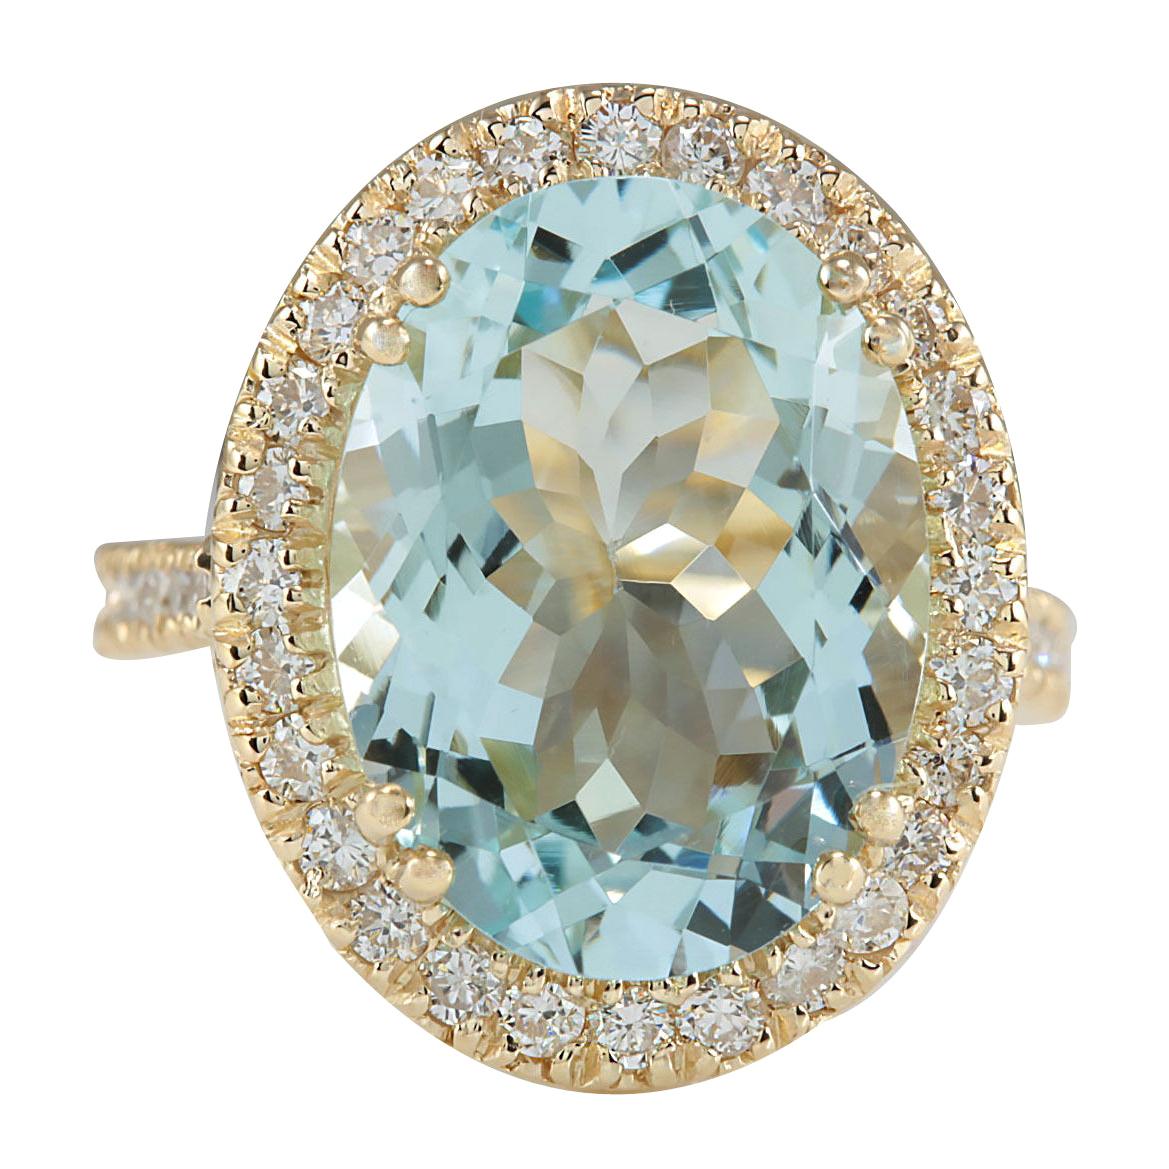 Exquisite Natural Aquamarine Diamond Ring In 14 Karat Yellow Gold 